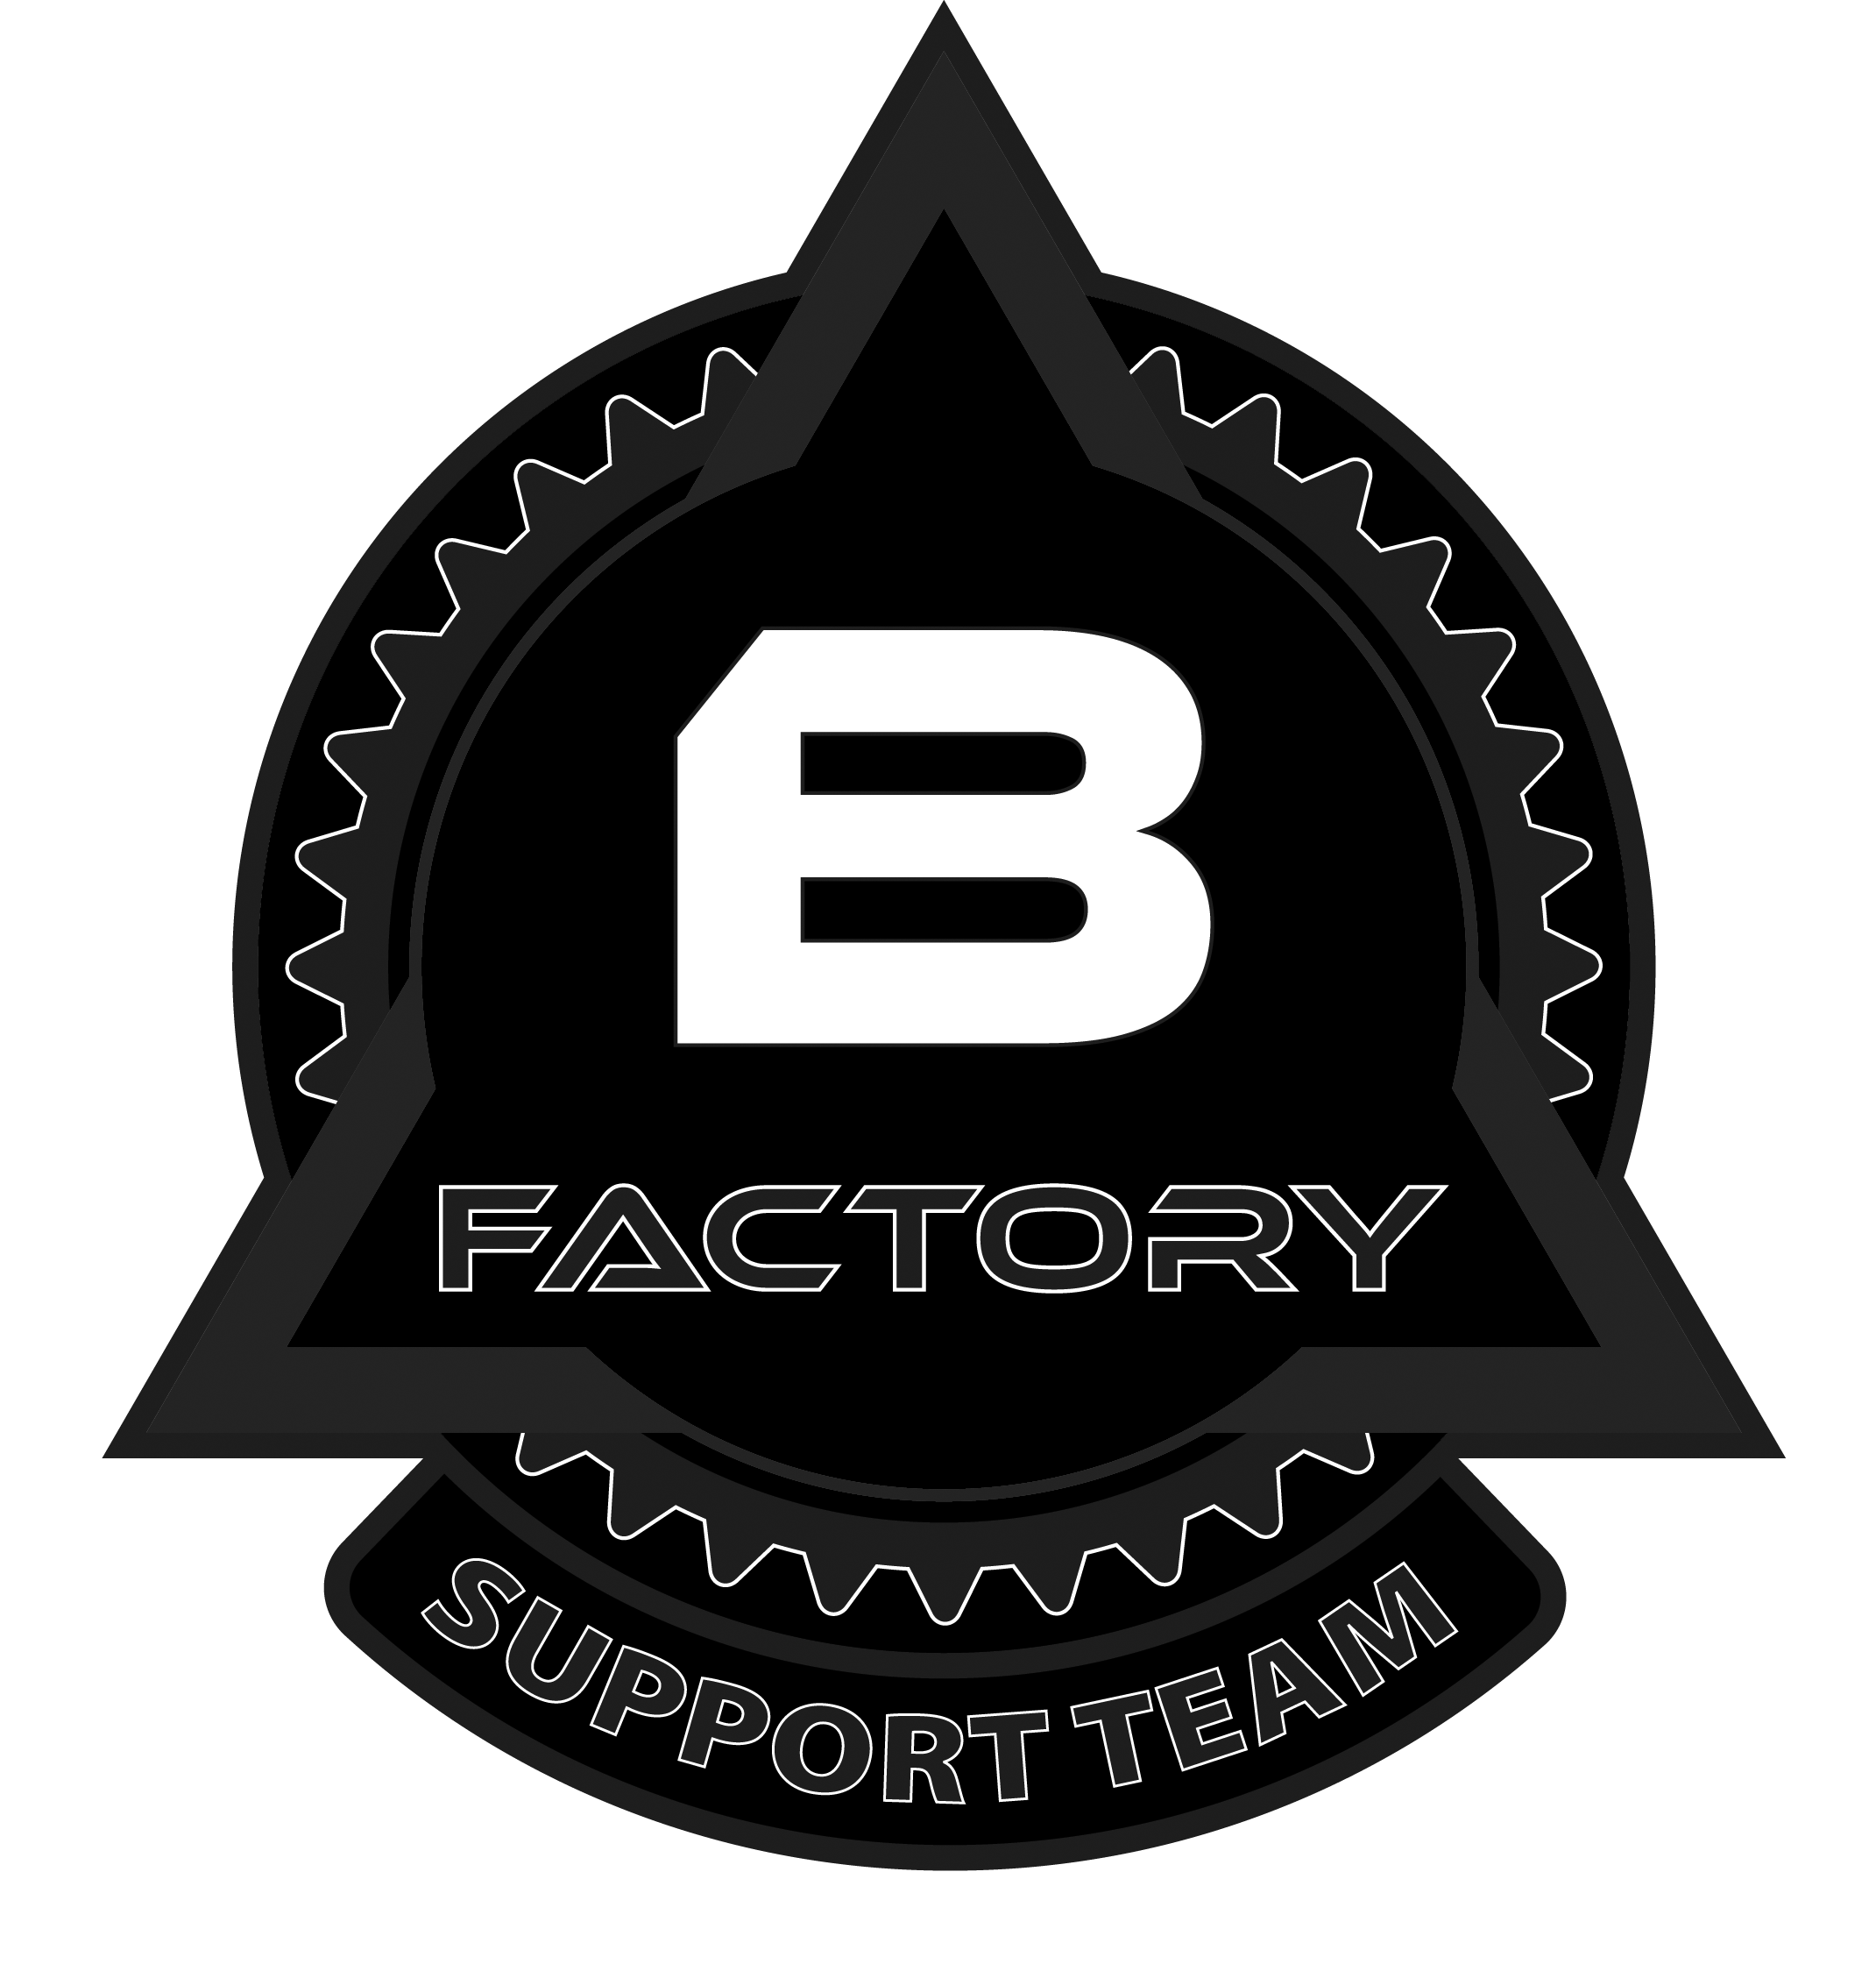 Bravo Factory – Un nouveau magasin, le lieu de rendez-vous wallon pour l’Airsoft.